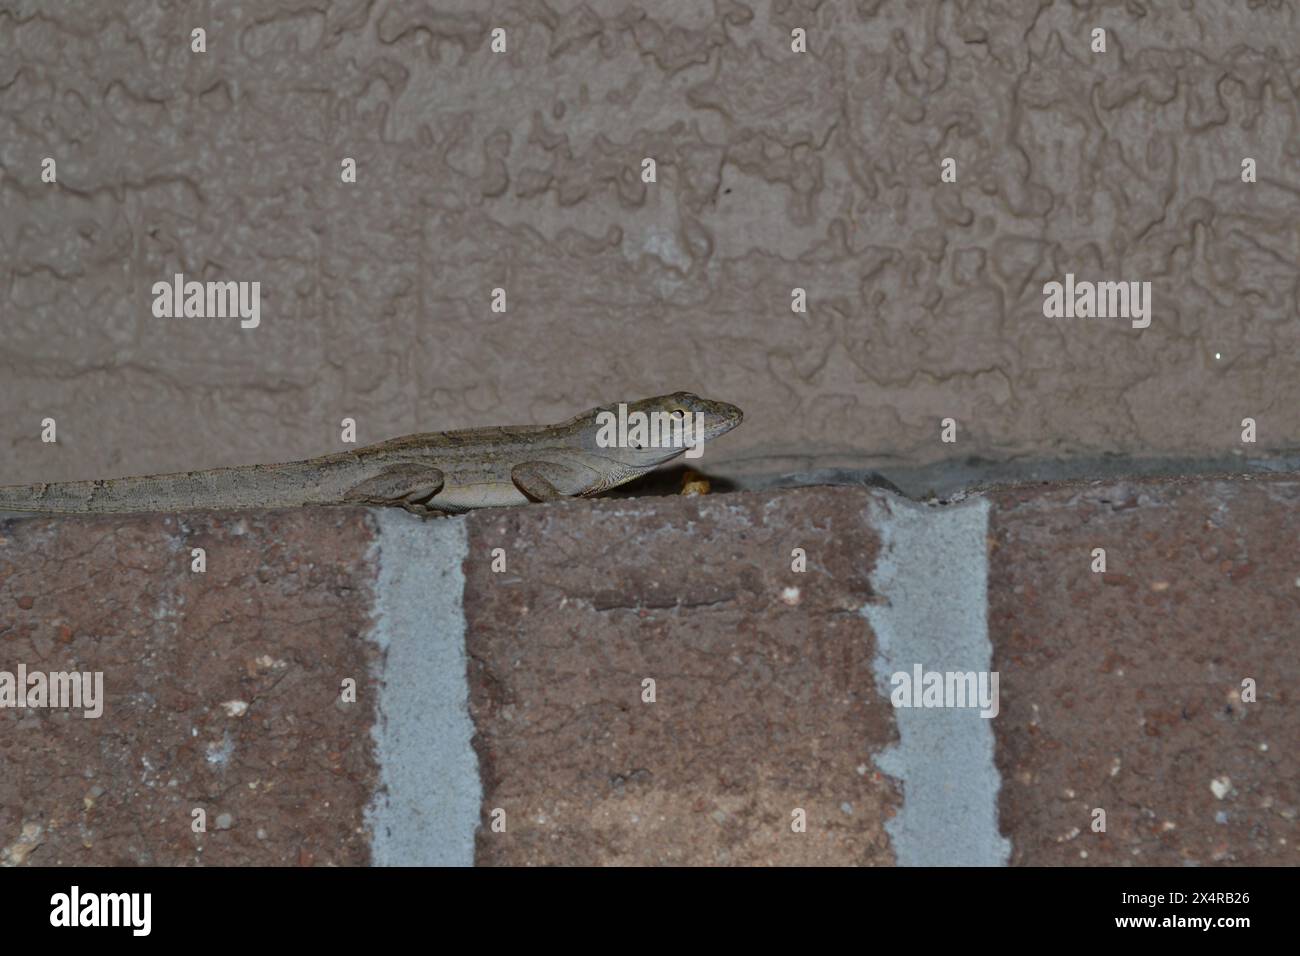 Eine braune Anol-Eidechse ruht auf einem rostigen Ziegelvorsprung, ihr nachgewachsener Schwanz ist sichtbar, und steht an einer braunen strukturierten Wand. Stockfoto